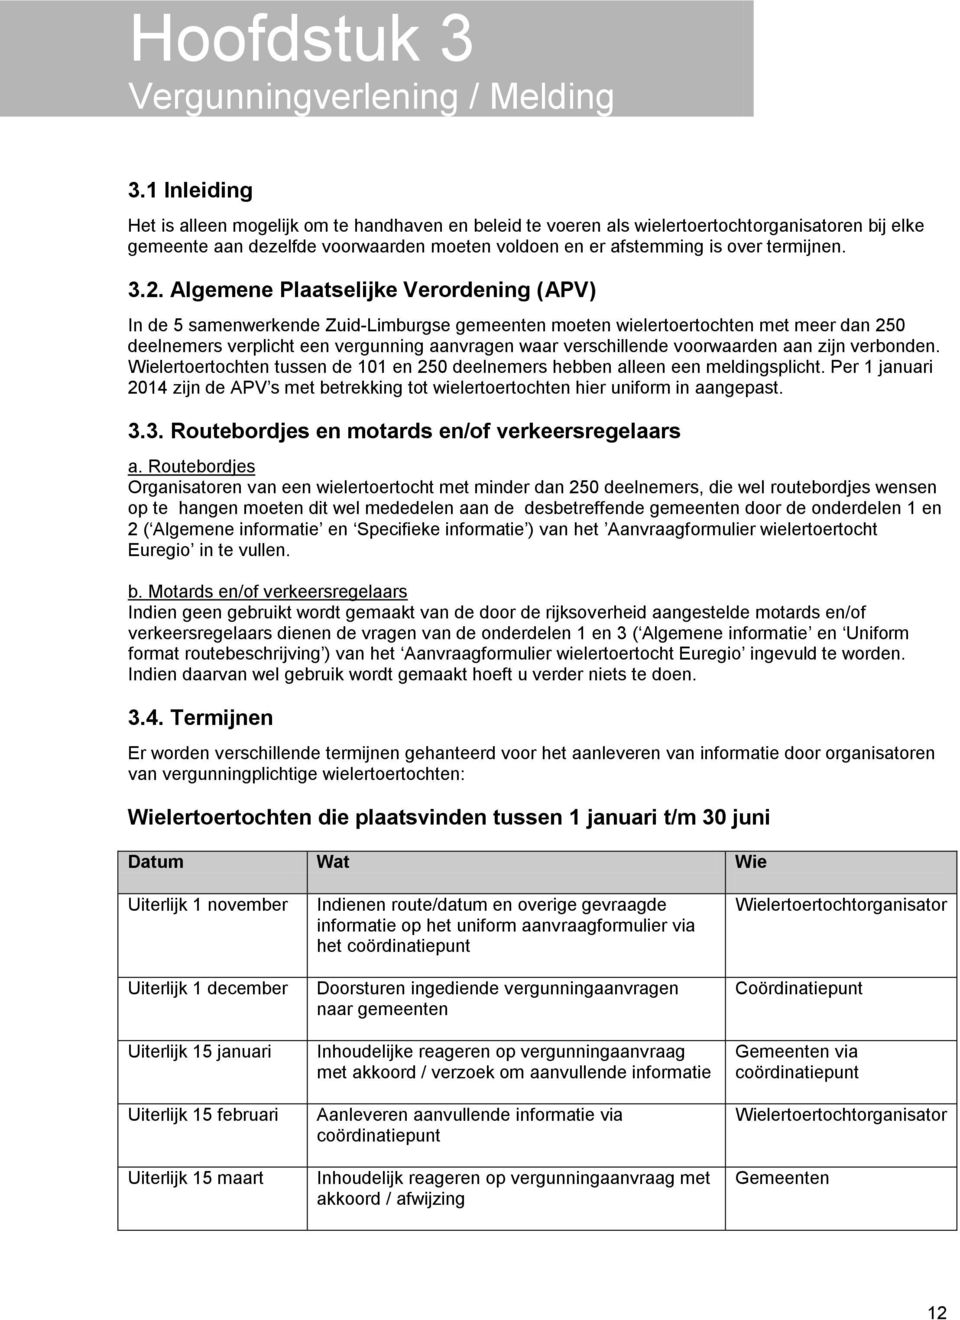 2. Algemene Plaatselijke Verordening (APV) In de 5 samenwerkende Zuid-Limburgse gemeenten moeten wielertoertochten met meer dan 250 deelnemers verplicht een vergunning aanvragen waar verschillende